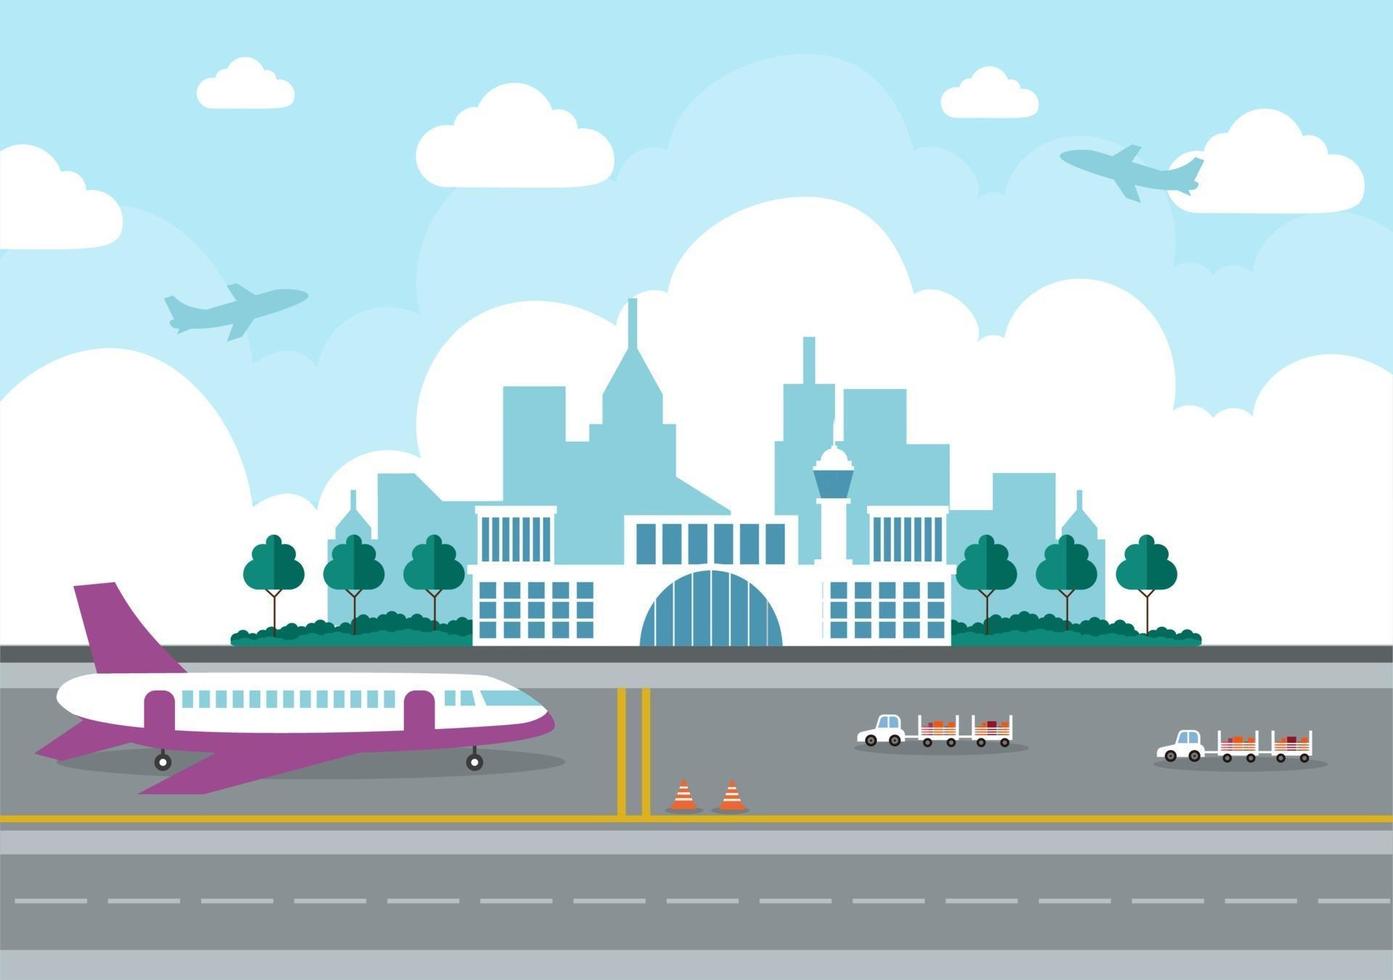 Flughafenterminalgebäude mit abhebender Infografikflugzeug- und verschiedenen Transportartenelementschablonenvektorillustration vektor